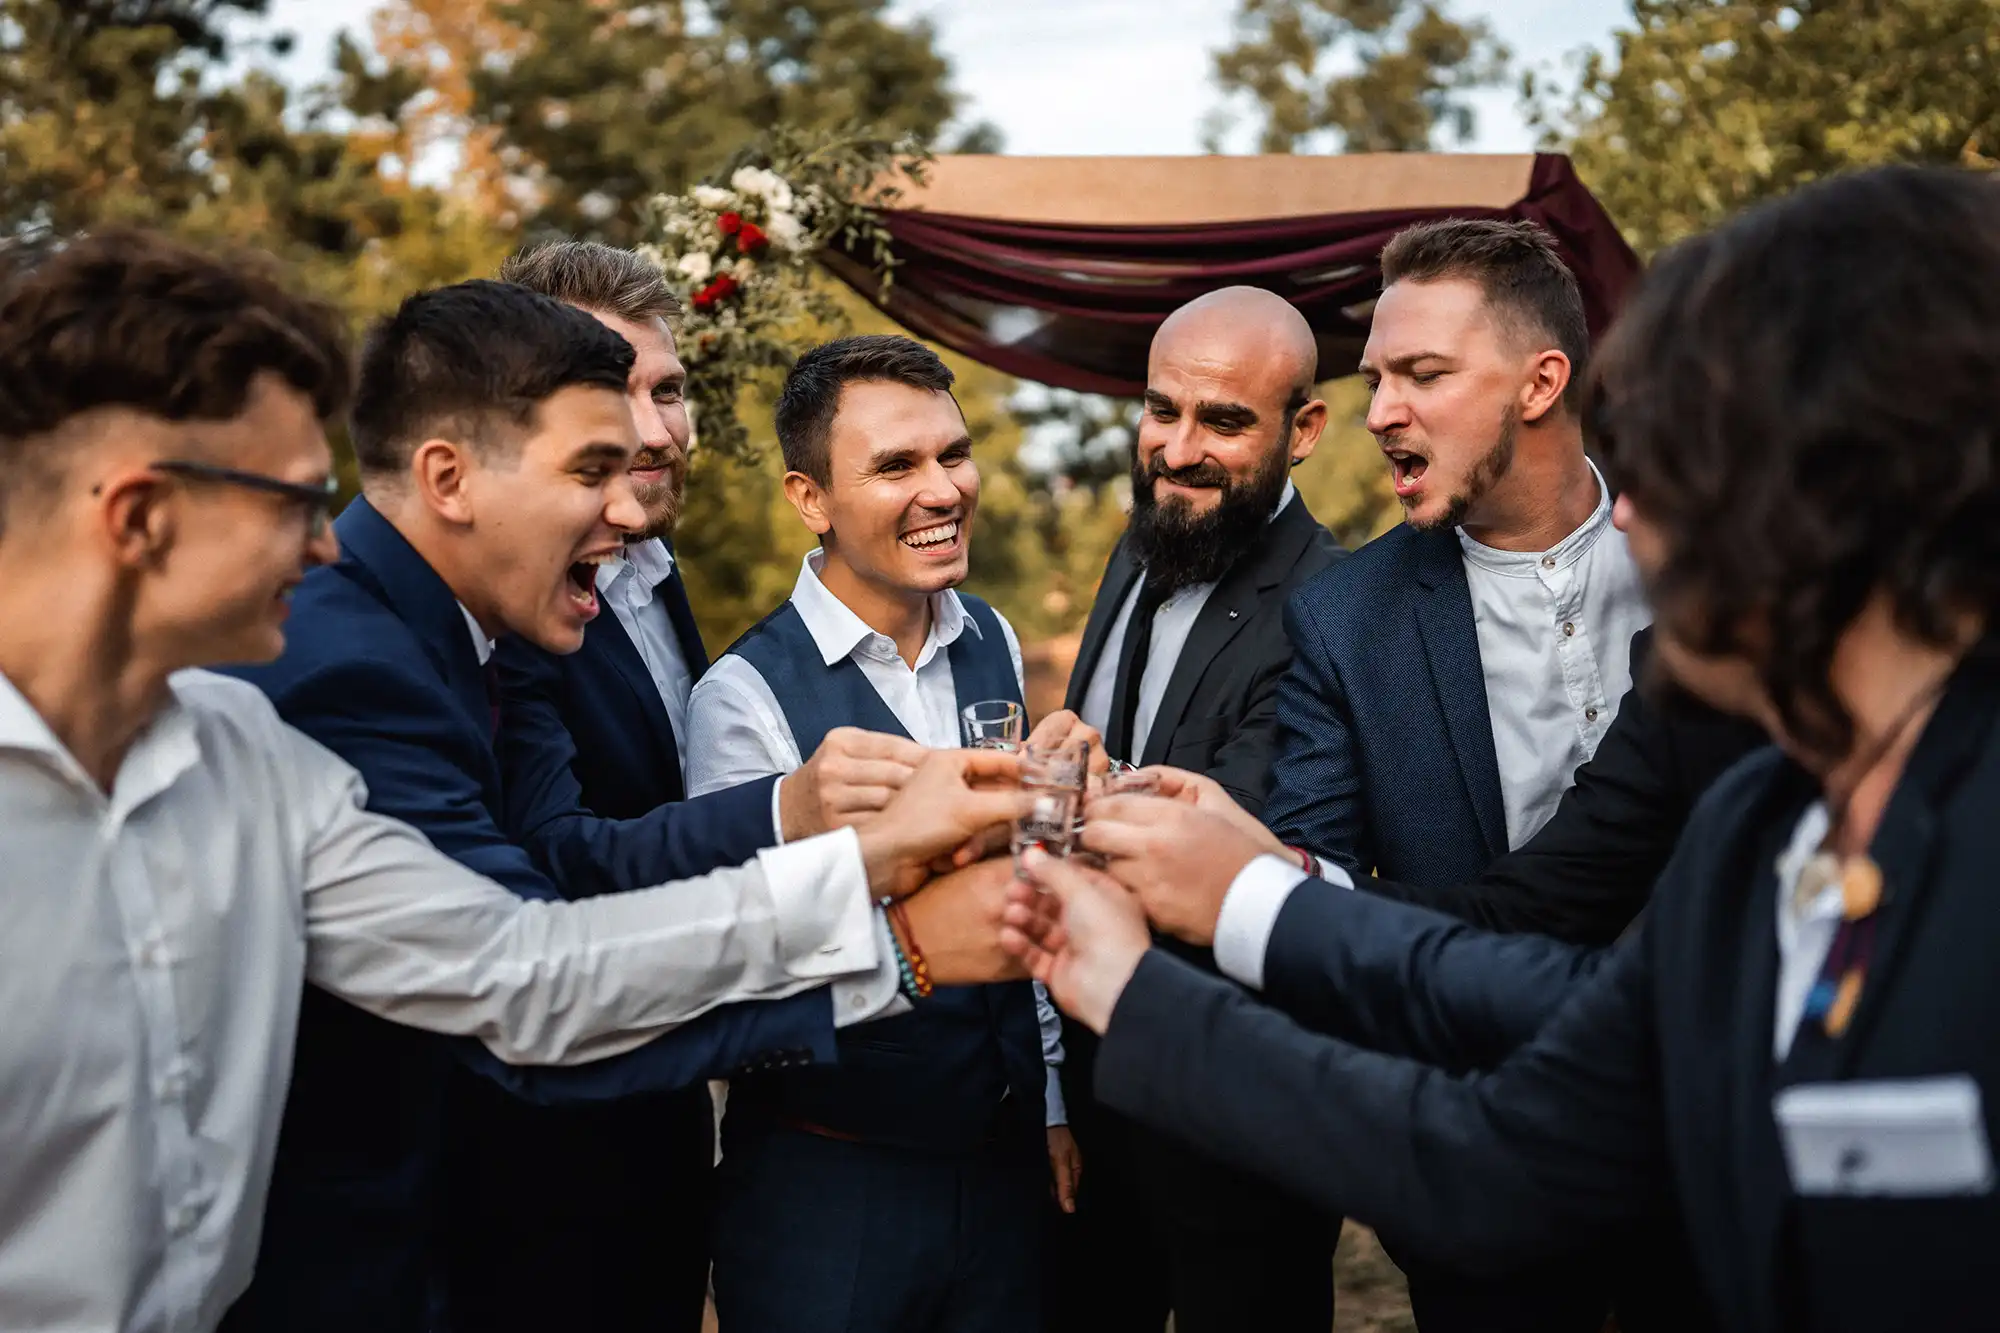 svatba v Brne na spilberku - zenich se svedky pripijejici si na zdravi